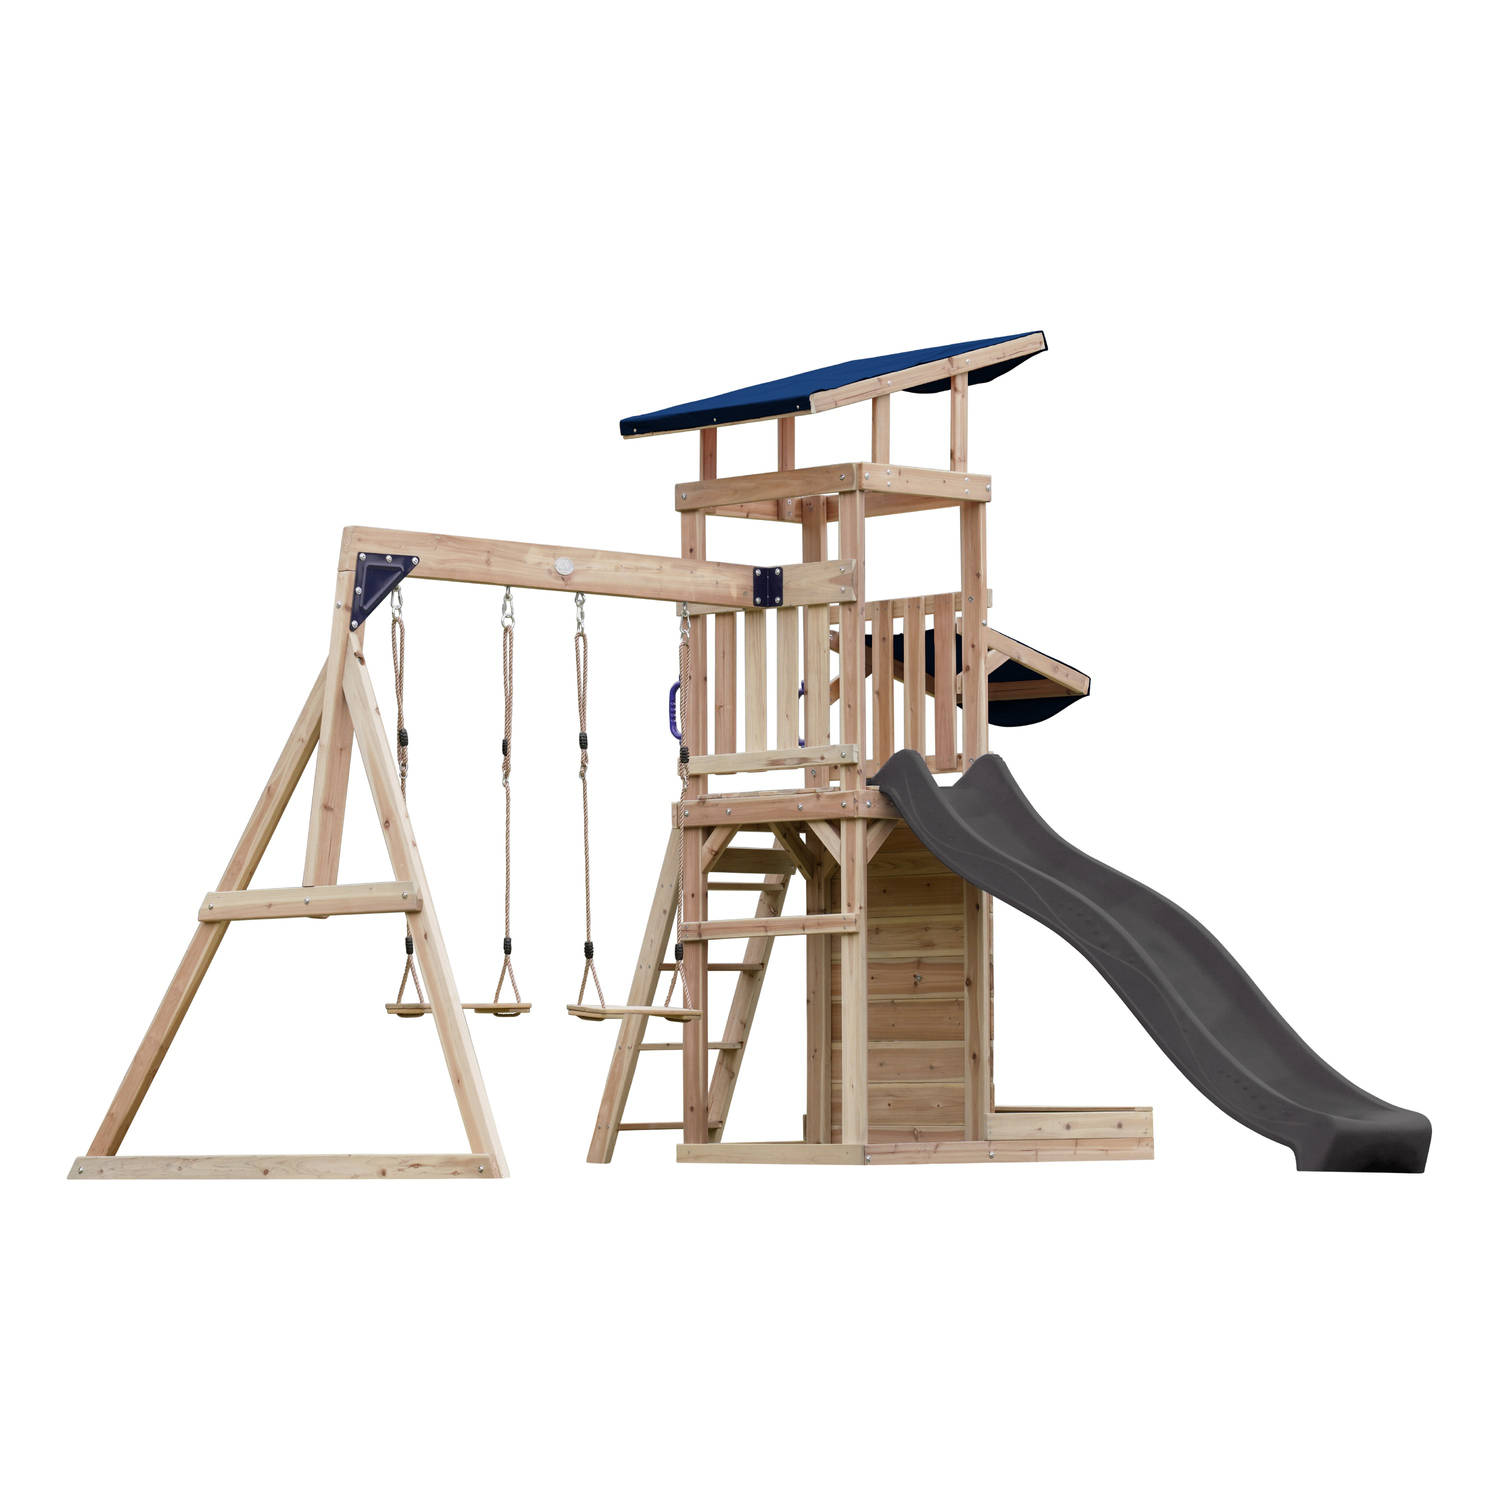 AXI Malik Speeltoestel met Dubbele Schommel Bruin – Grijze Glijbaan – Zandbak en Speelwand - FSC hout - Speelhuis op palen voor de tuin